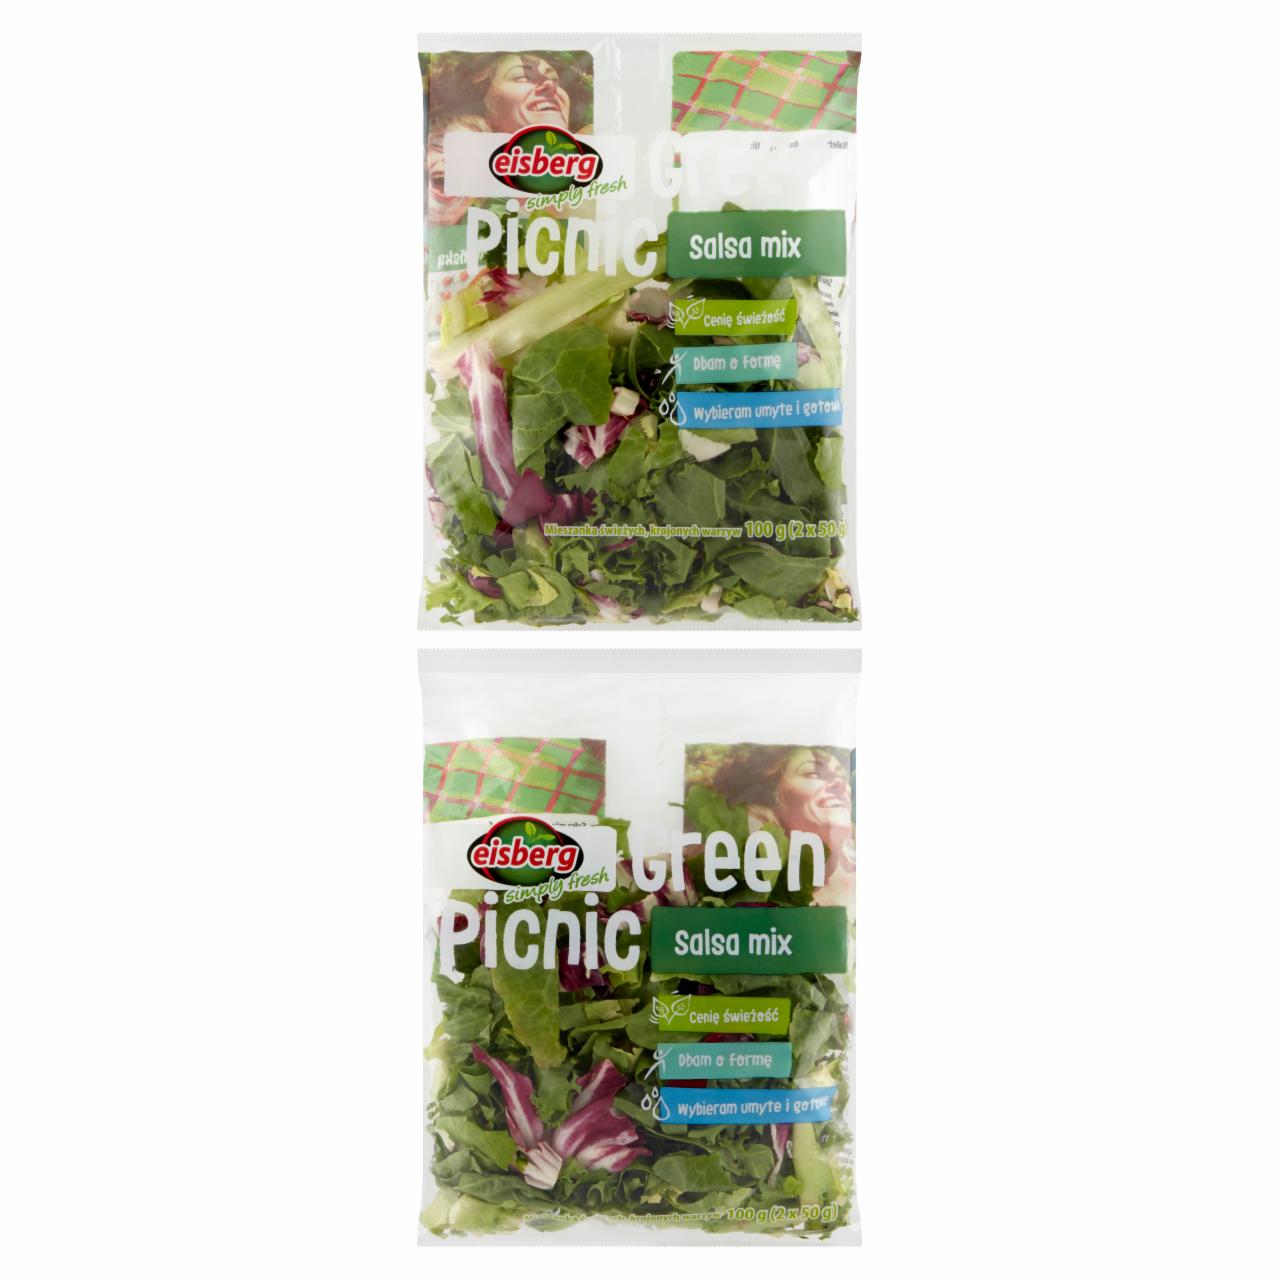 Zdjęcia - Eisberg Green Picnic Salsa mix Mieszanka świeżych krojonych warzyw 100 g (2 x 50 g)